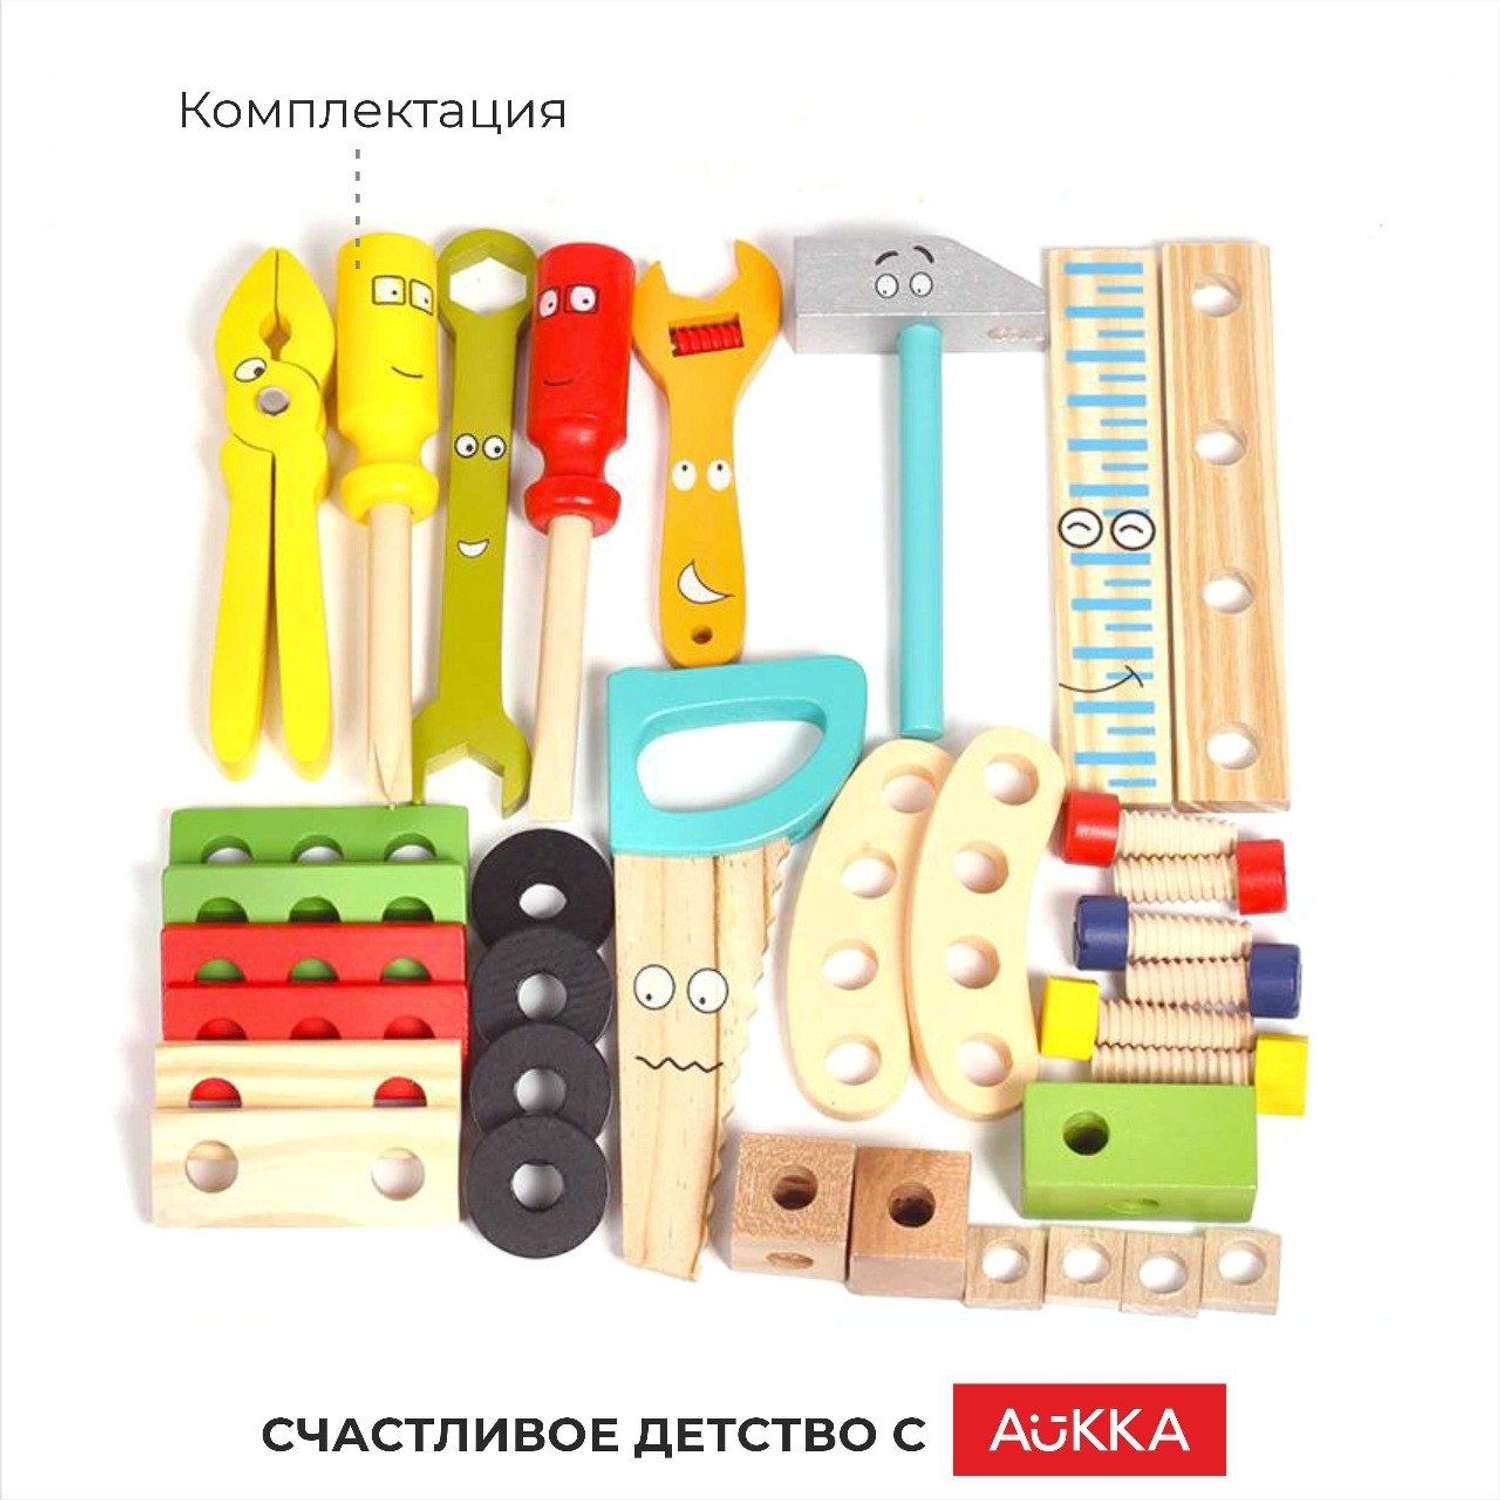 Деревянный конструктор AUKKA Игрушечные строительные иструменты для мальчика - фото 8